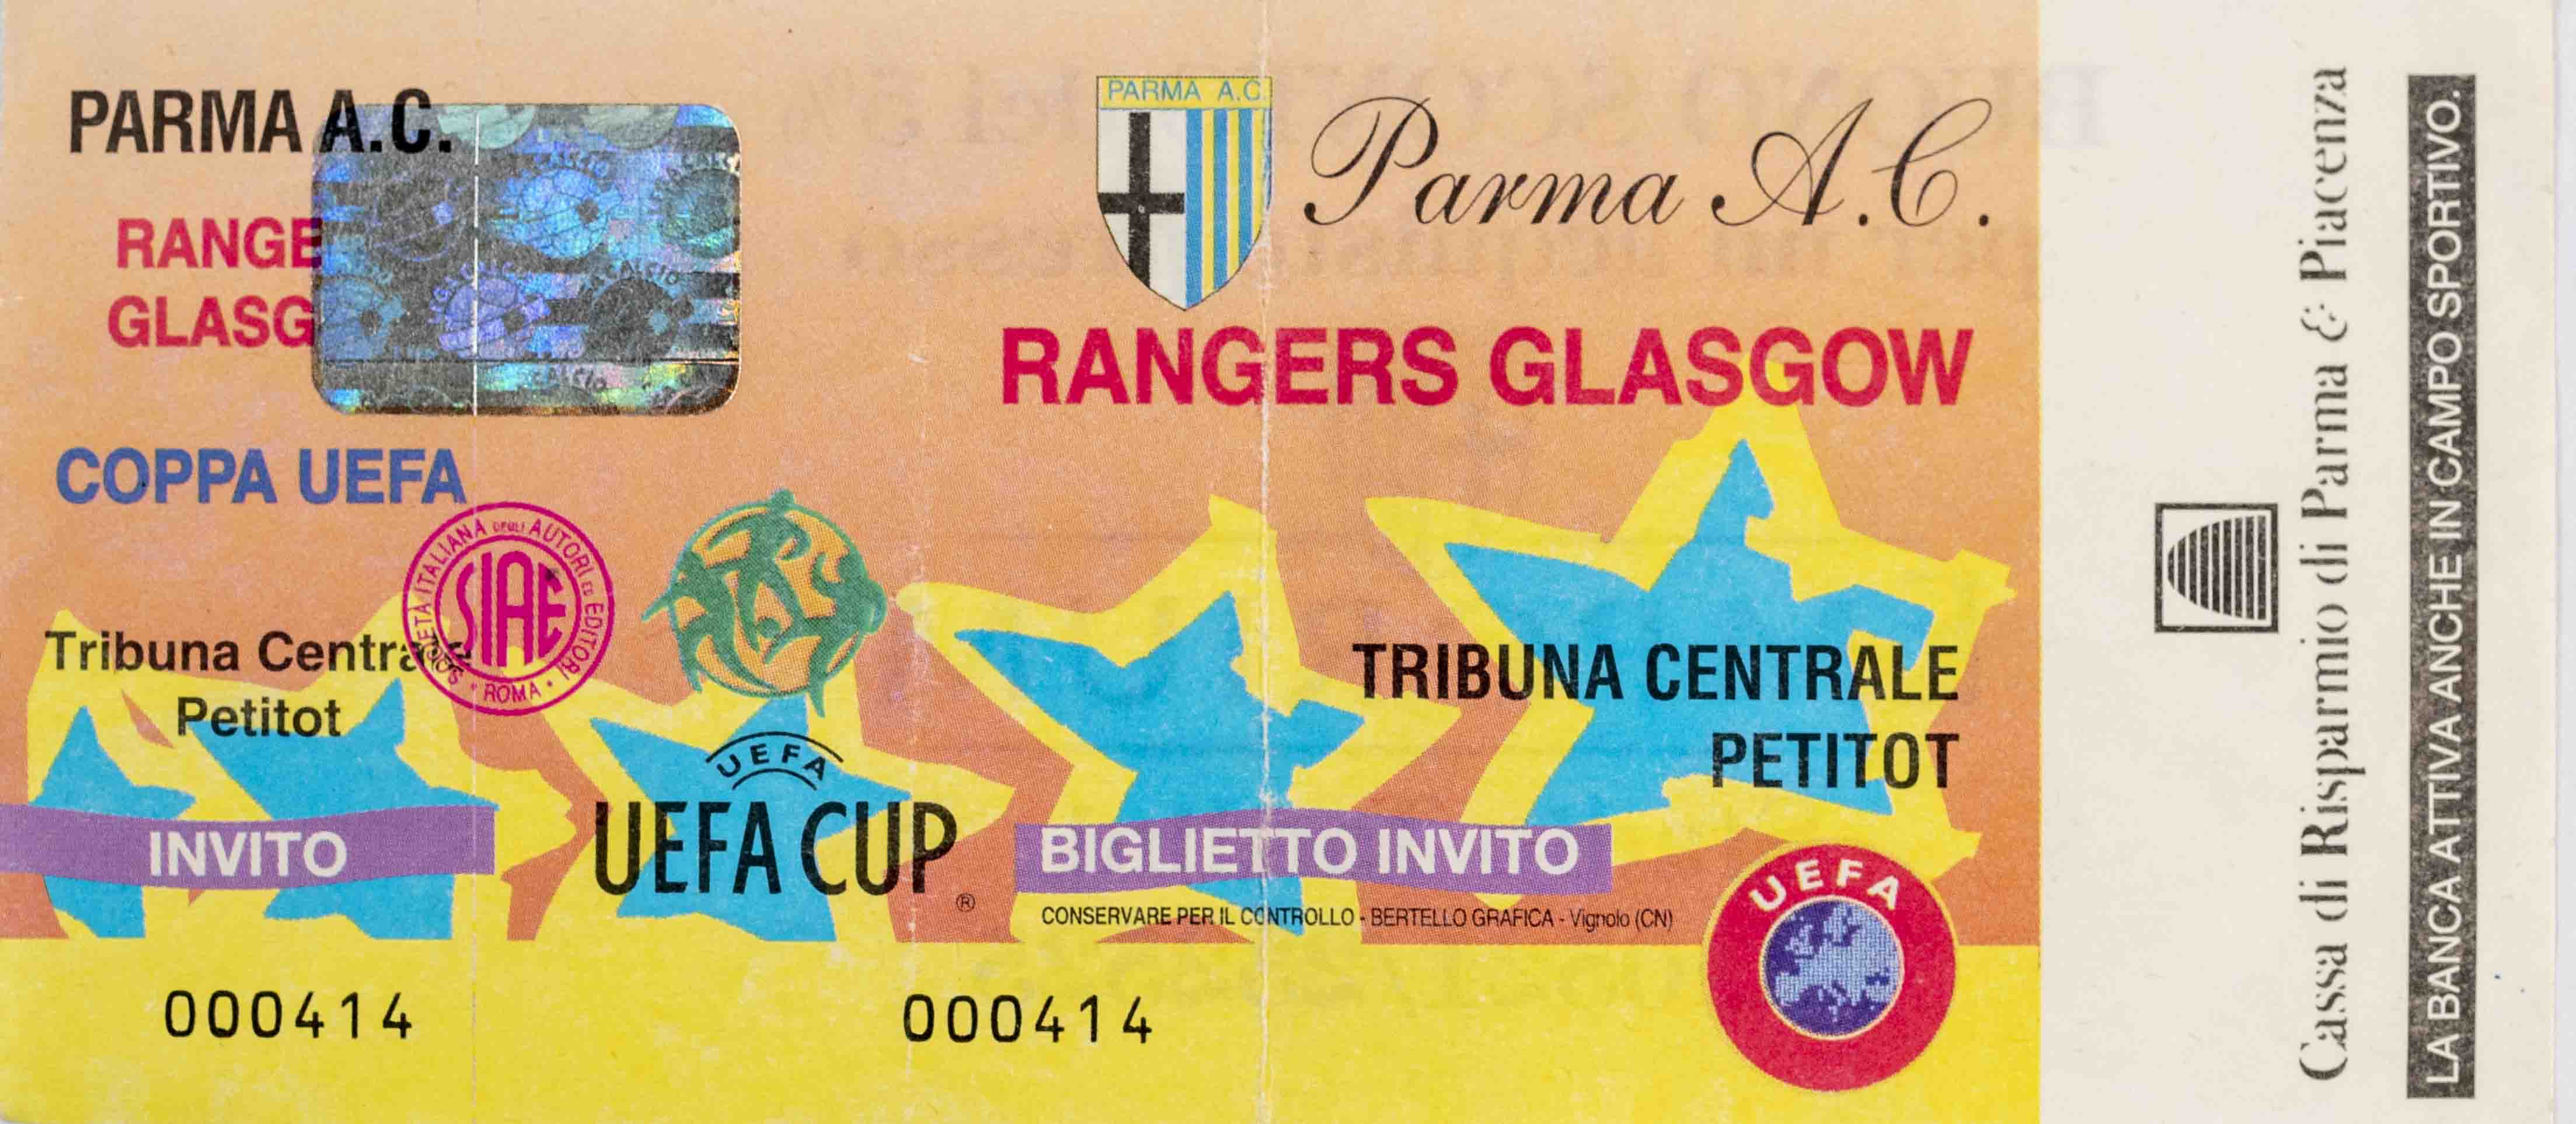 Vstupenka UEFA, Parma Ac v. Rangers Glasgow